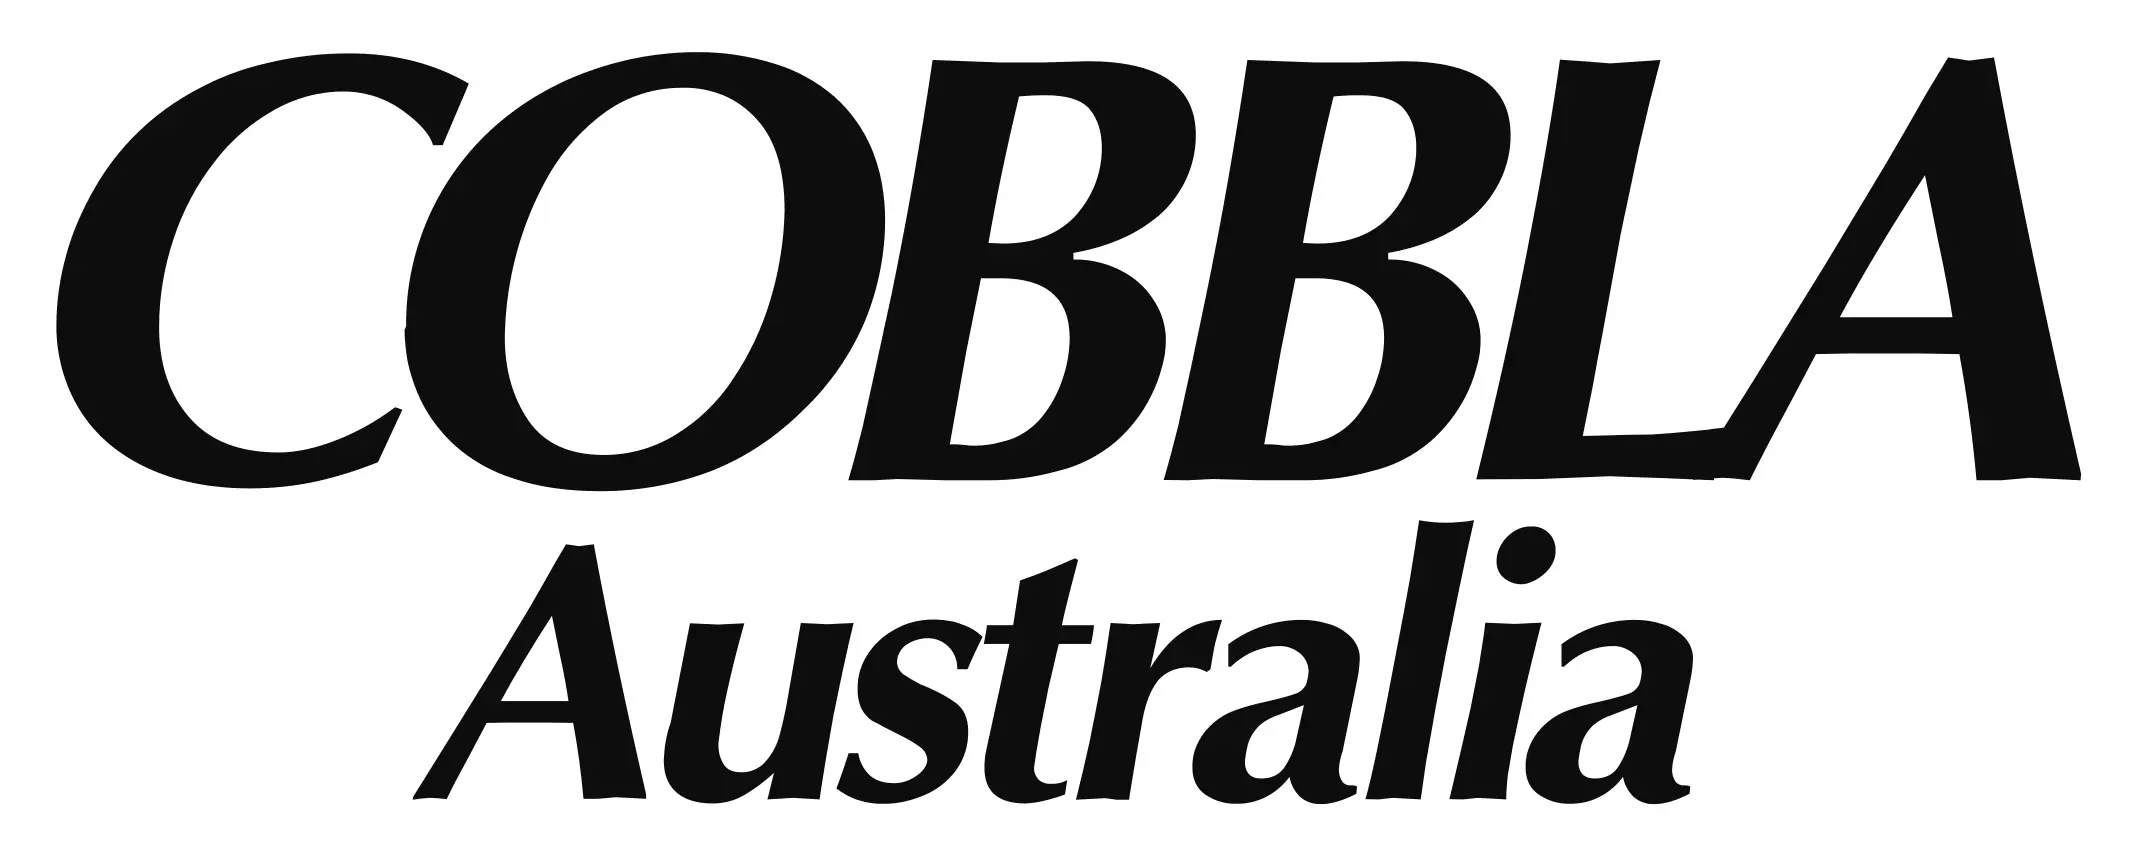 Cobbla australia logo